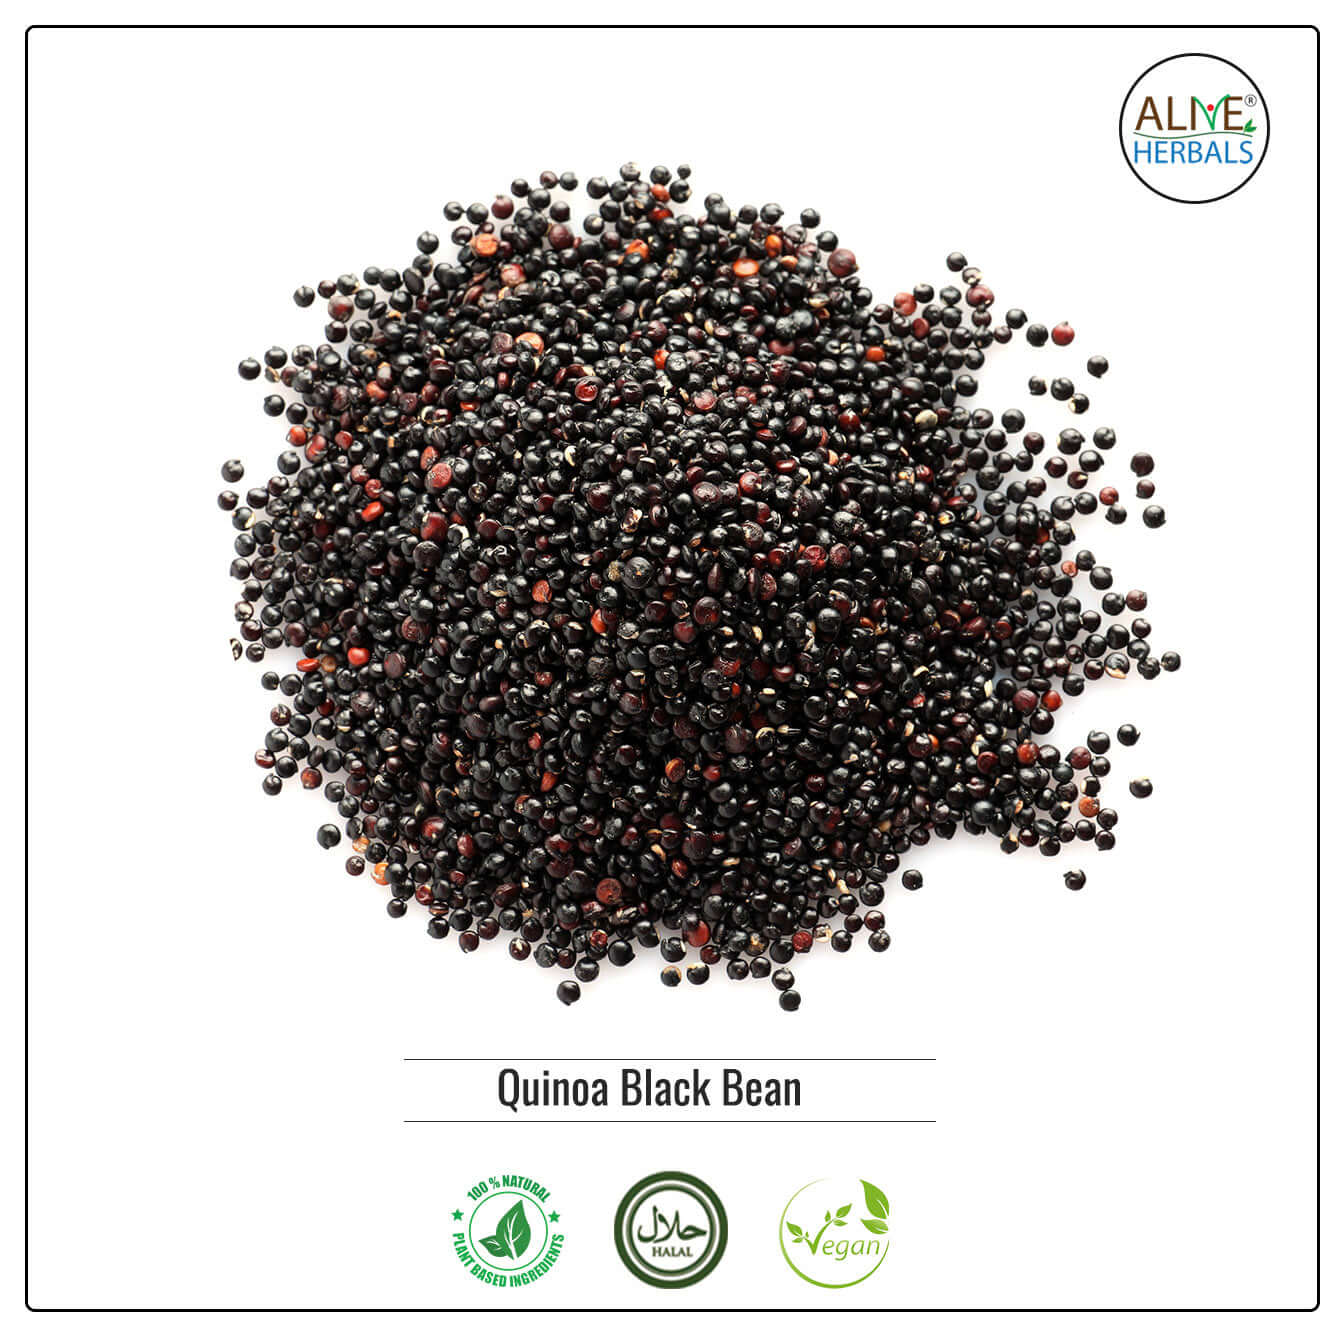 Quinoa Black Bean - Shop at Natural Food Store | Alive Herbals.